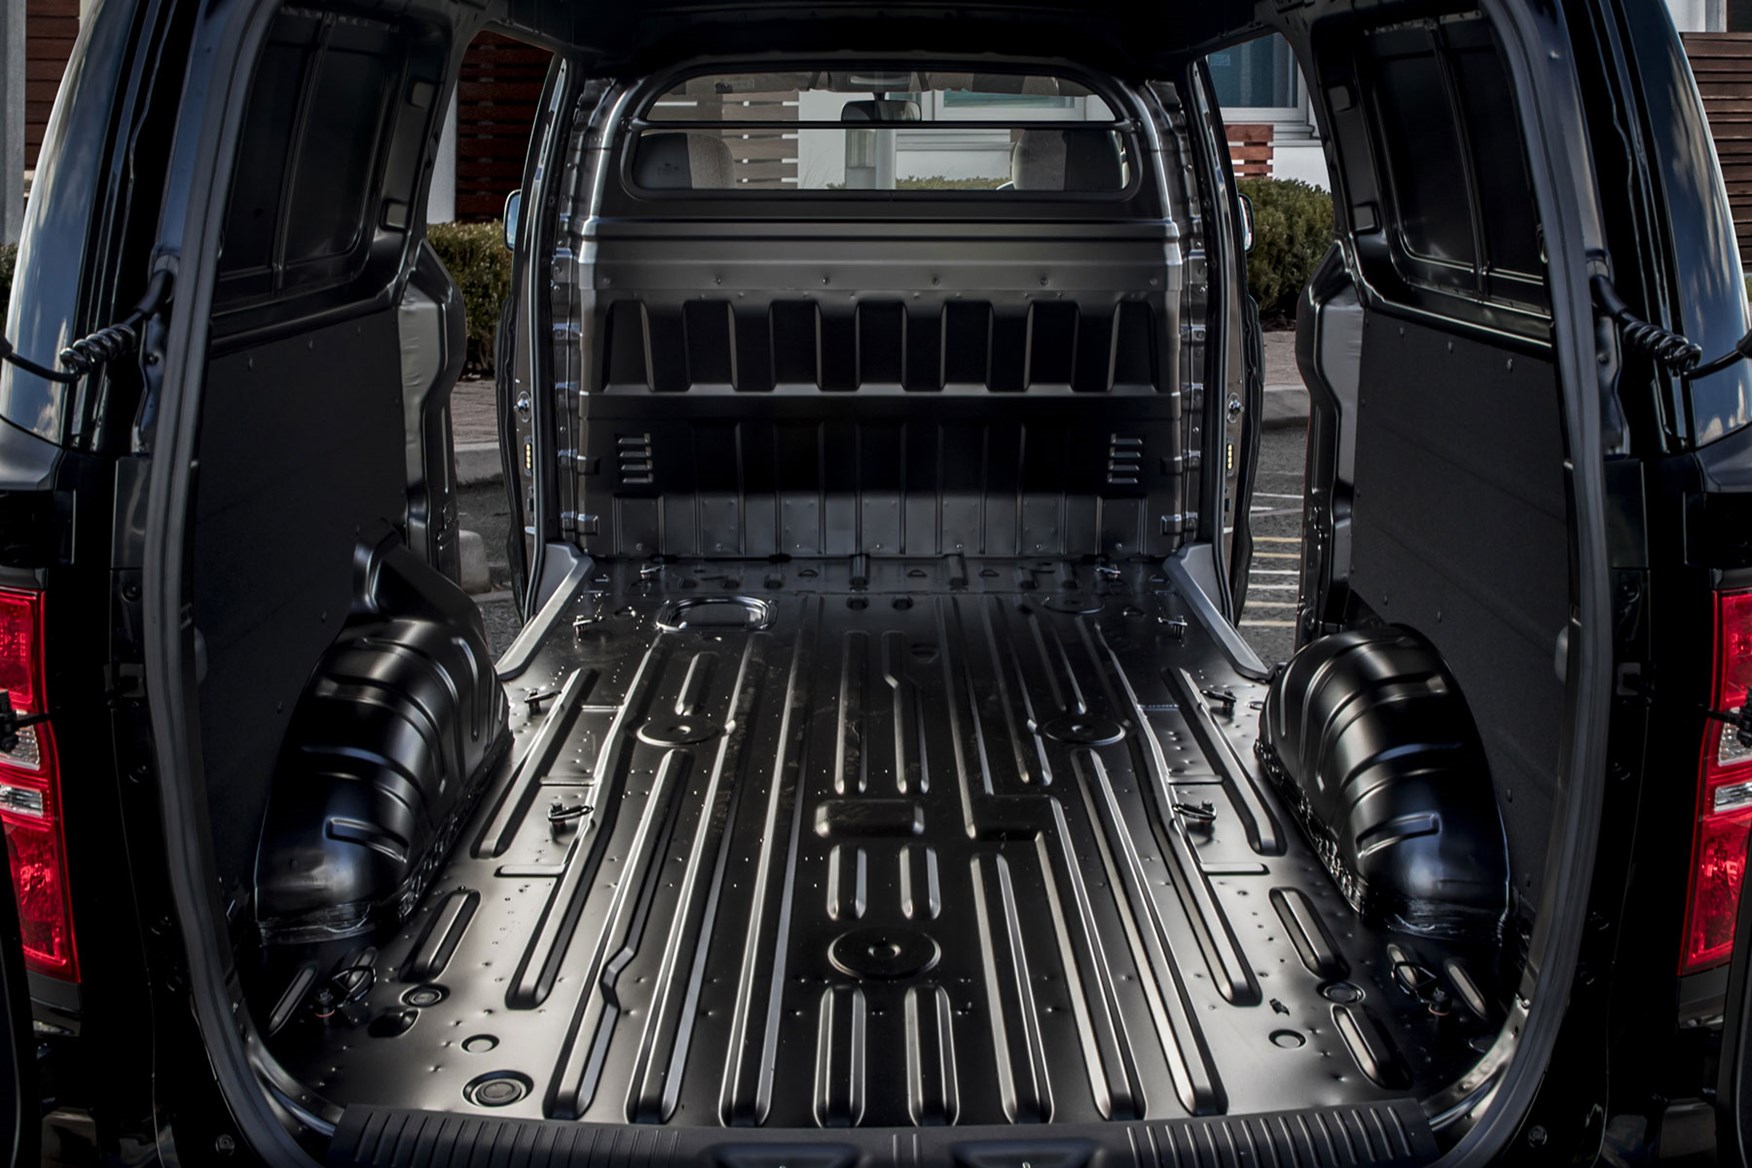 Hyundai iLoad load area, bare metal, 2018 facelift model